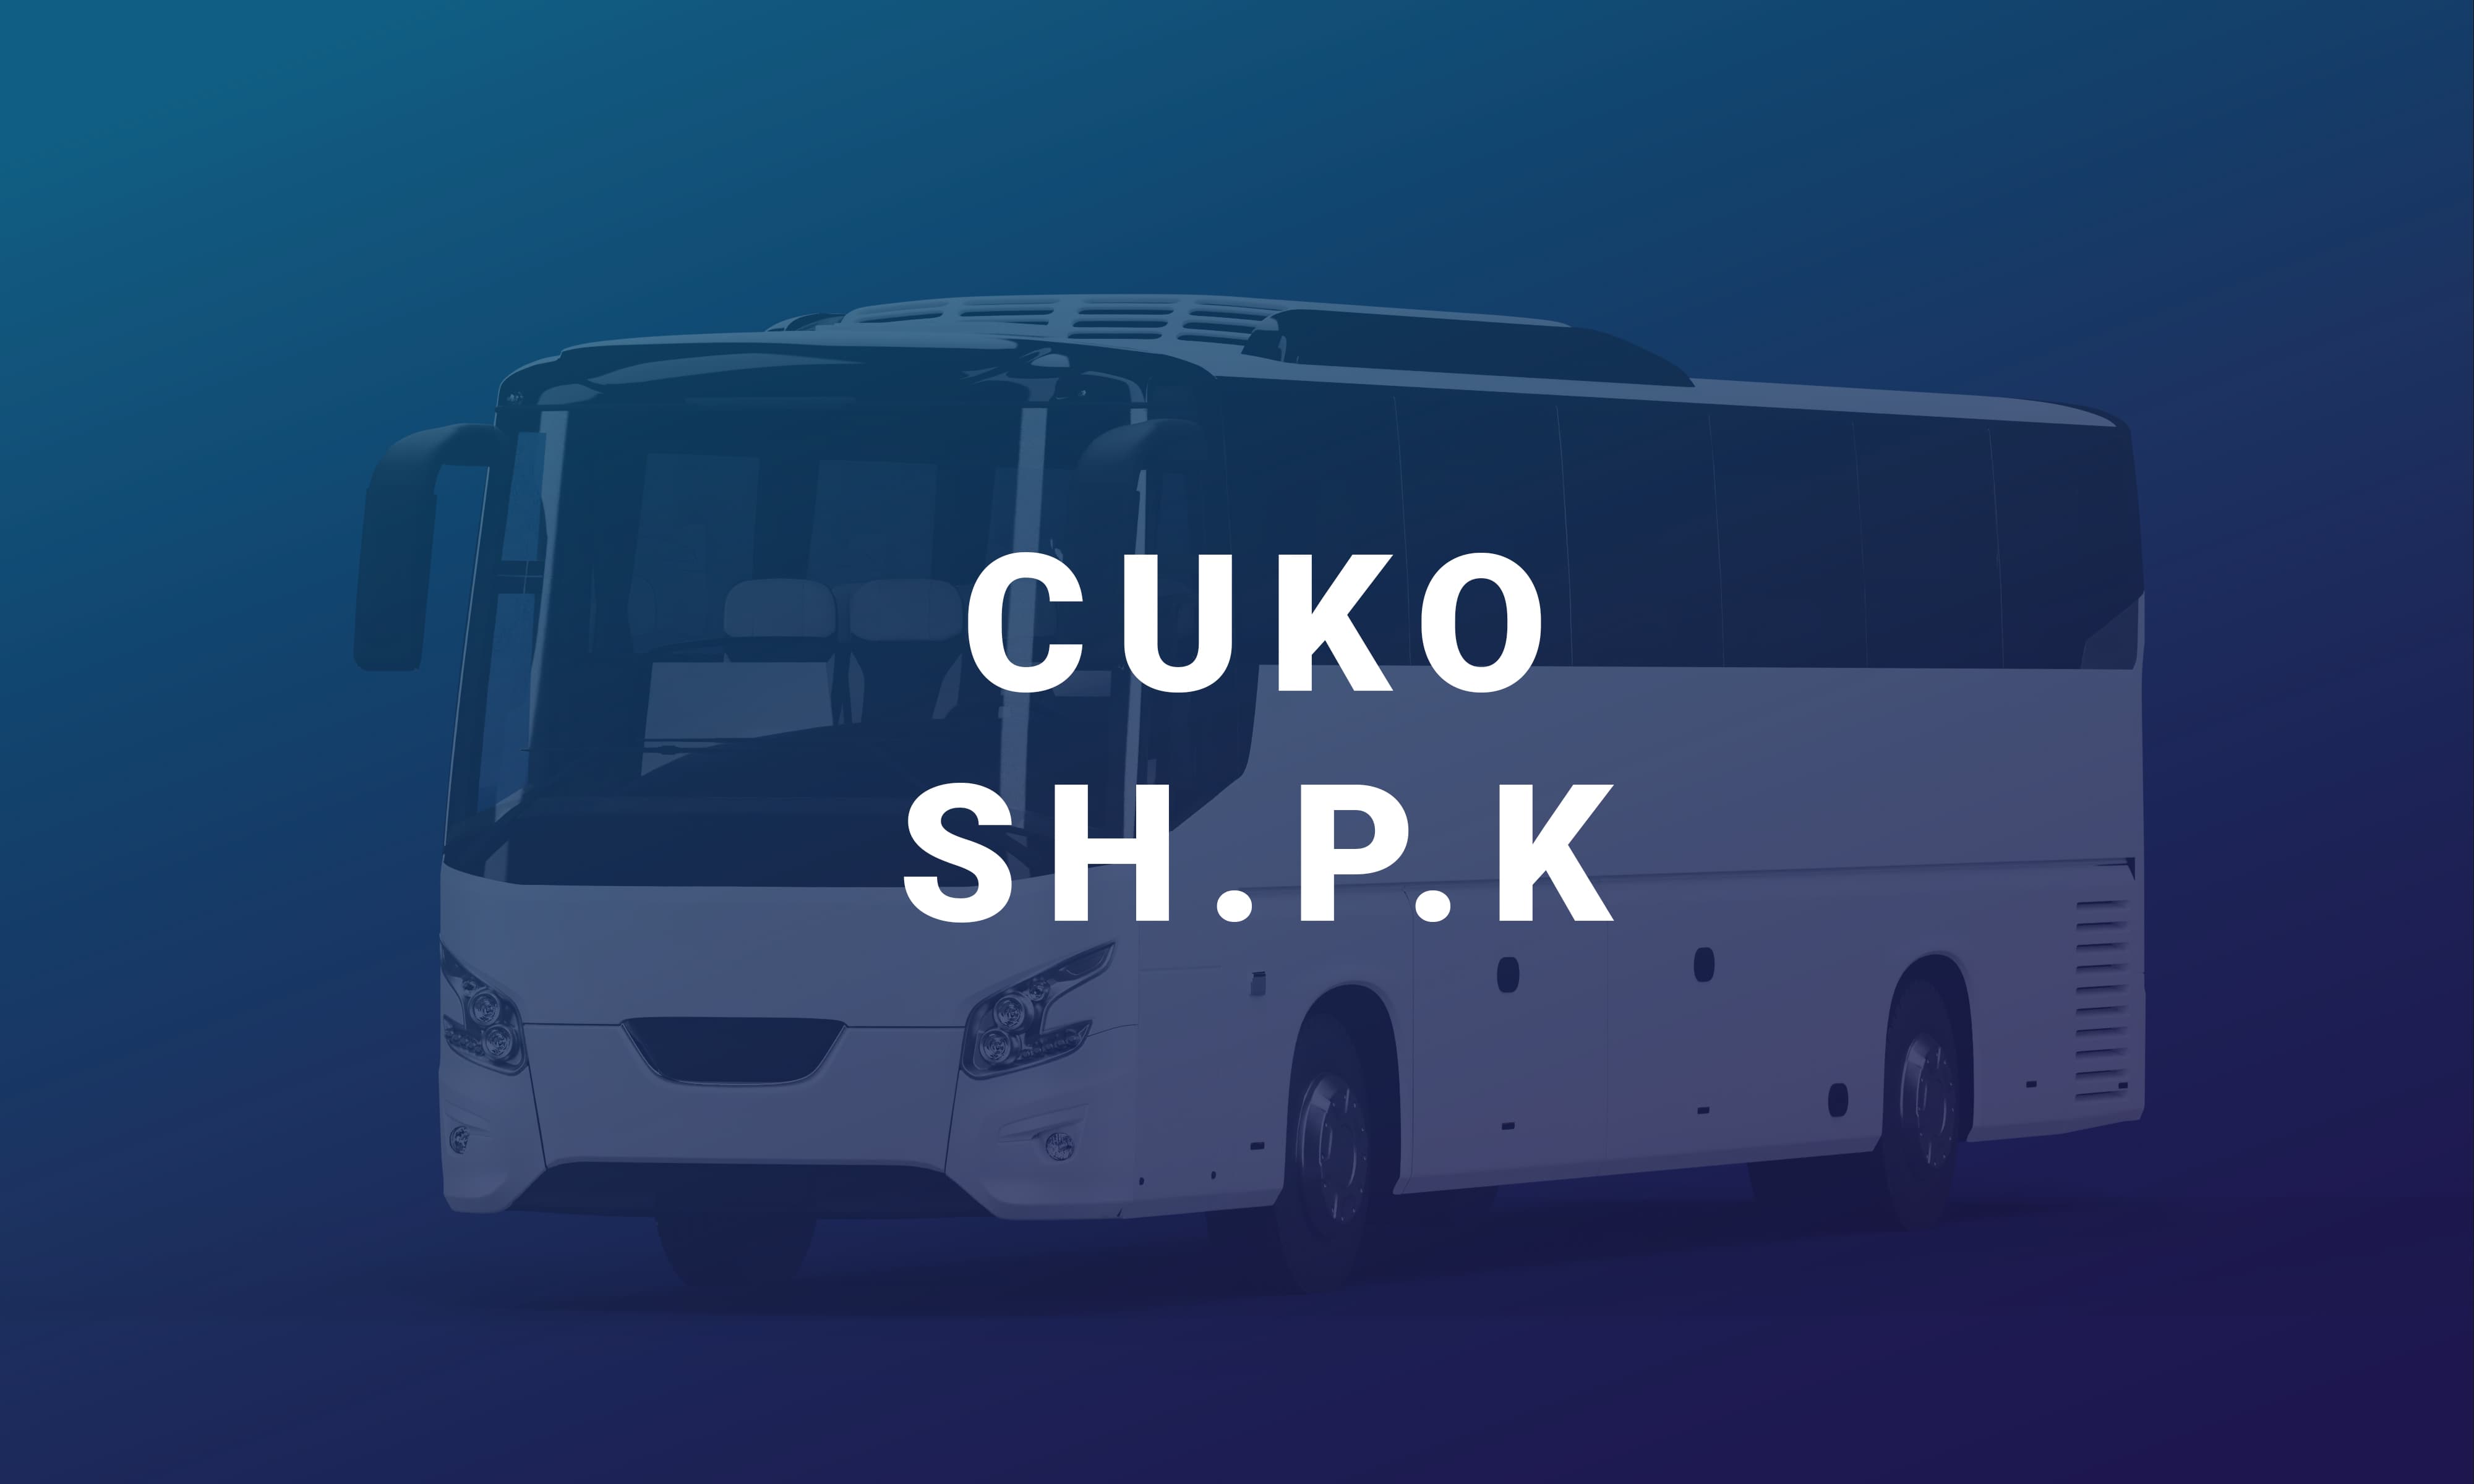 Cuko SH.P.K është një linjë ndërqytetase me qendër në Fier që ofron një shërbim çdo ditë për në Berat dhe kthim.